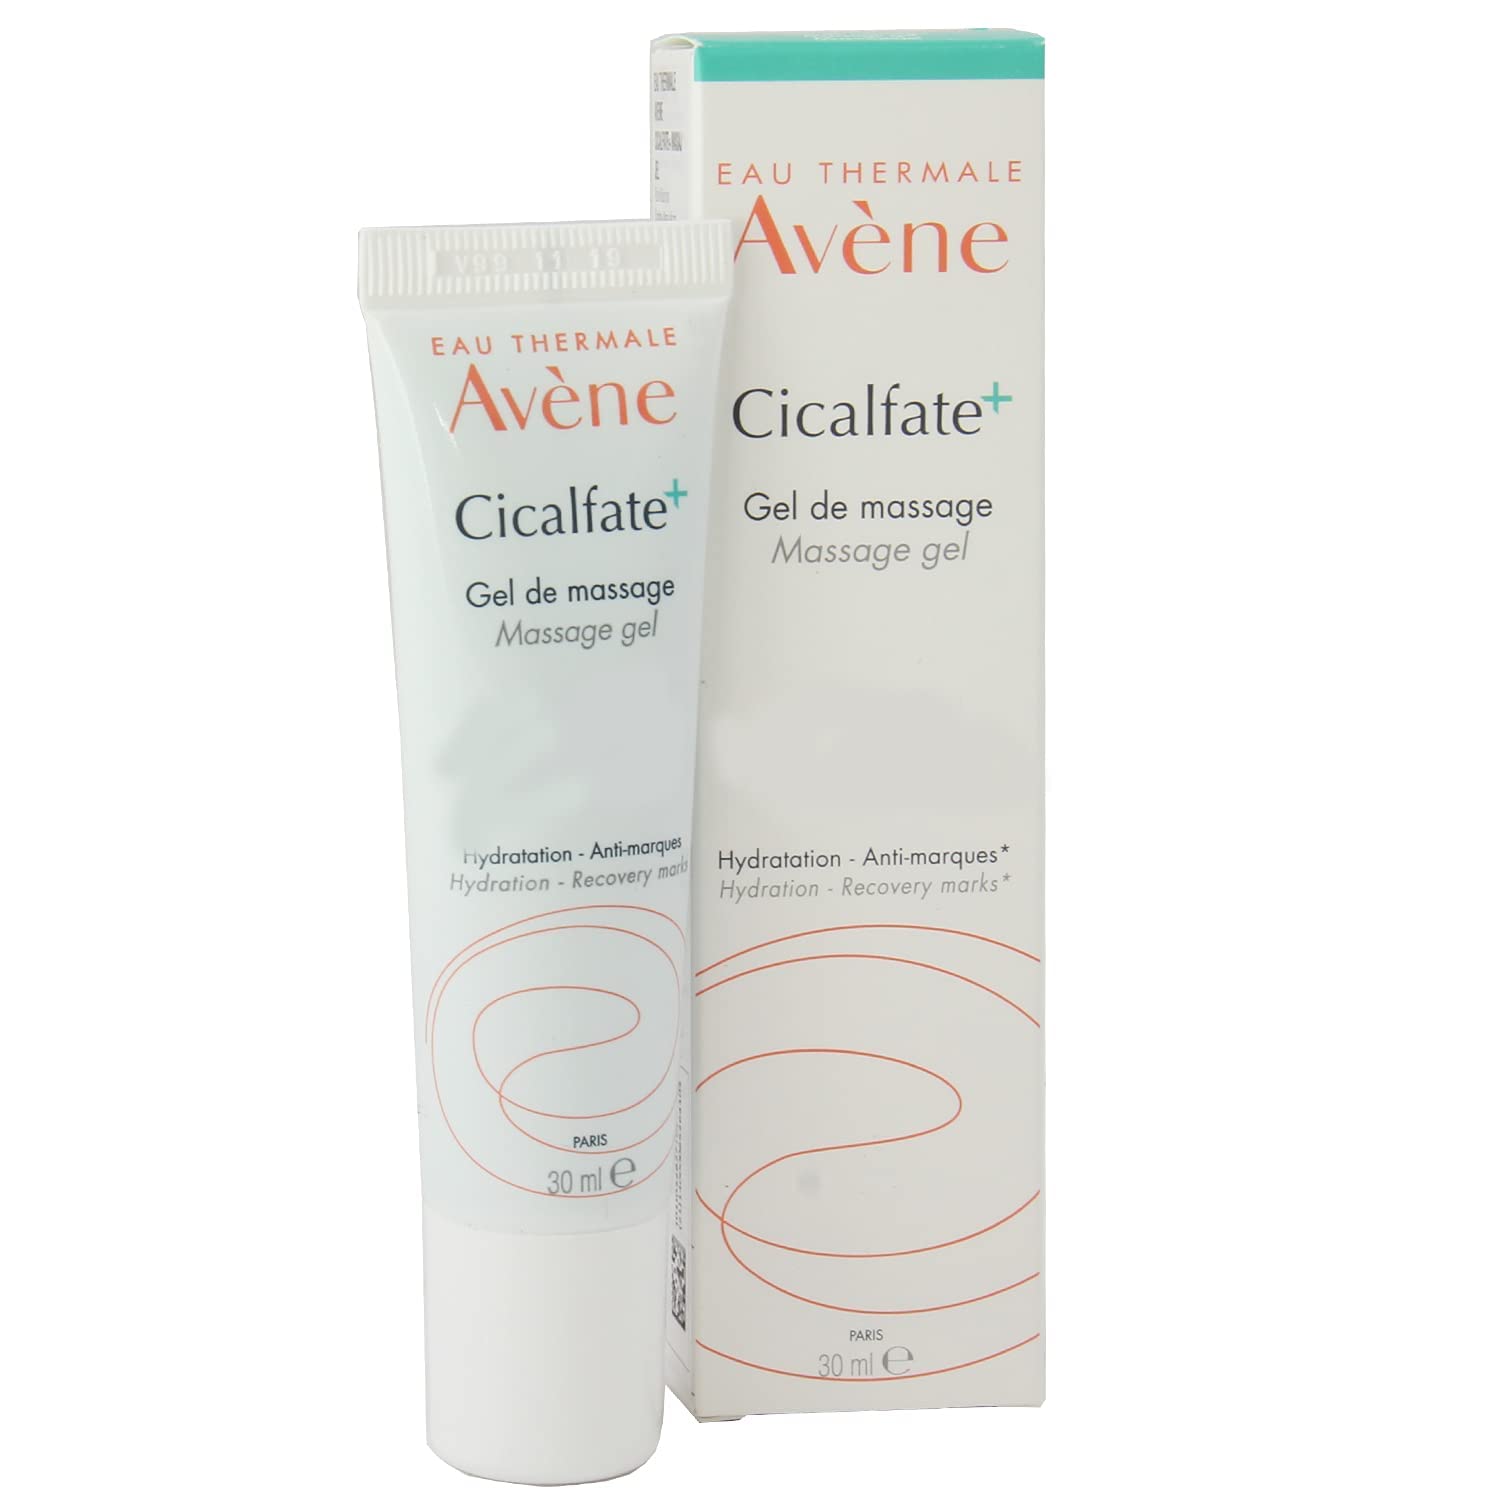 Avene Cicalfate + Scar Gel – Pro Beauty